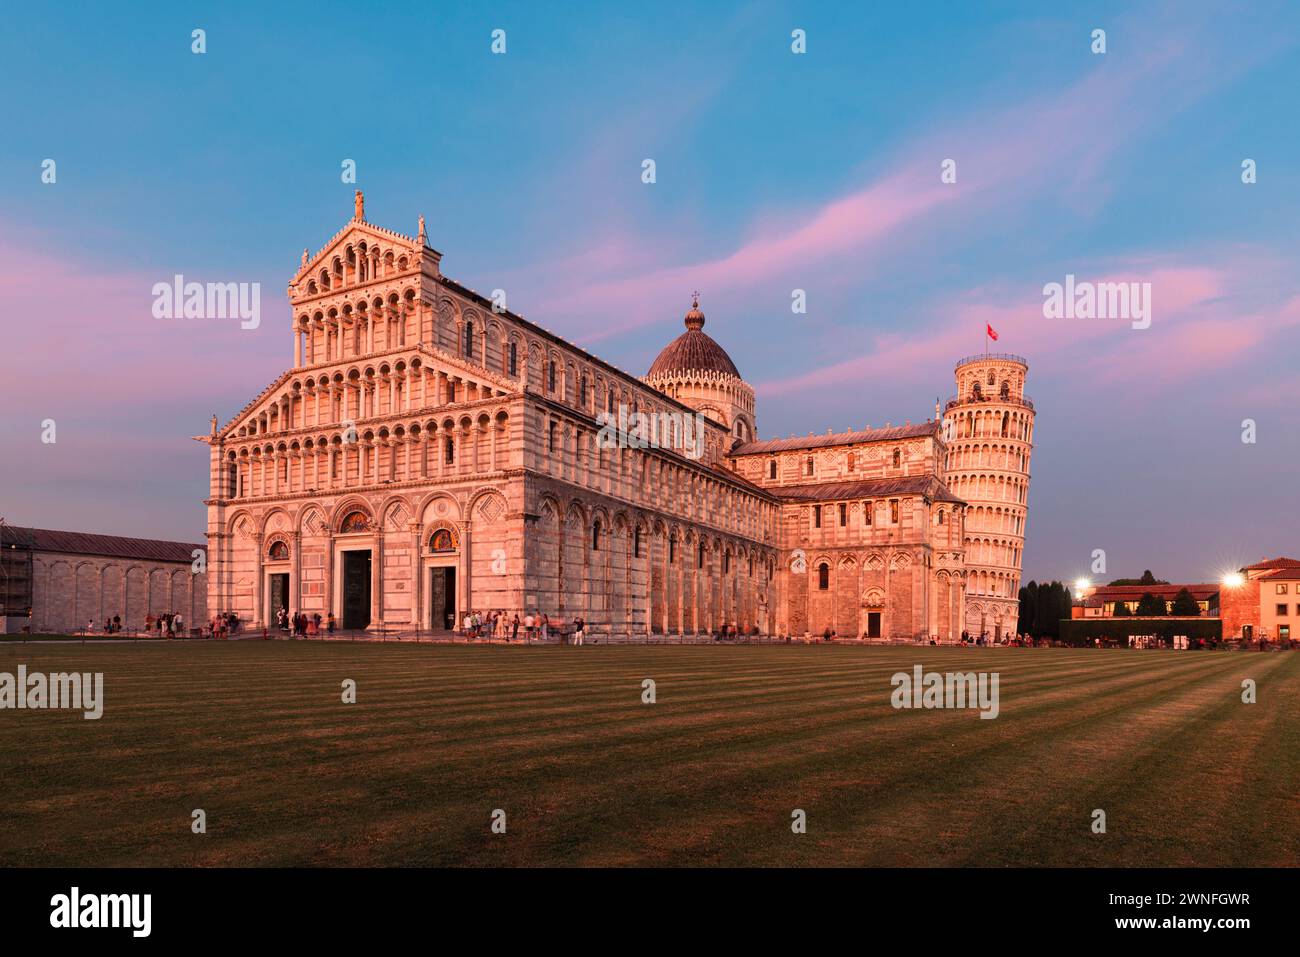 La Cattedrale e la Torre Pendente di Pisa illuminano la luce rosa del crepuscolo, Pisa, Toscana, Italia Foto Stock